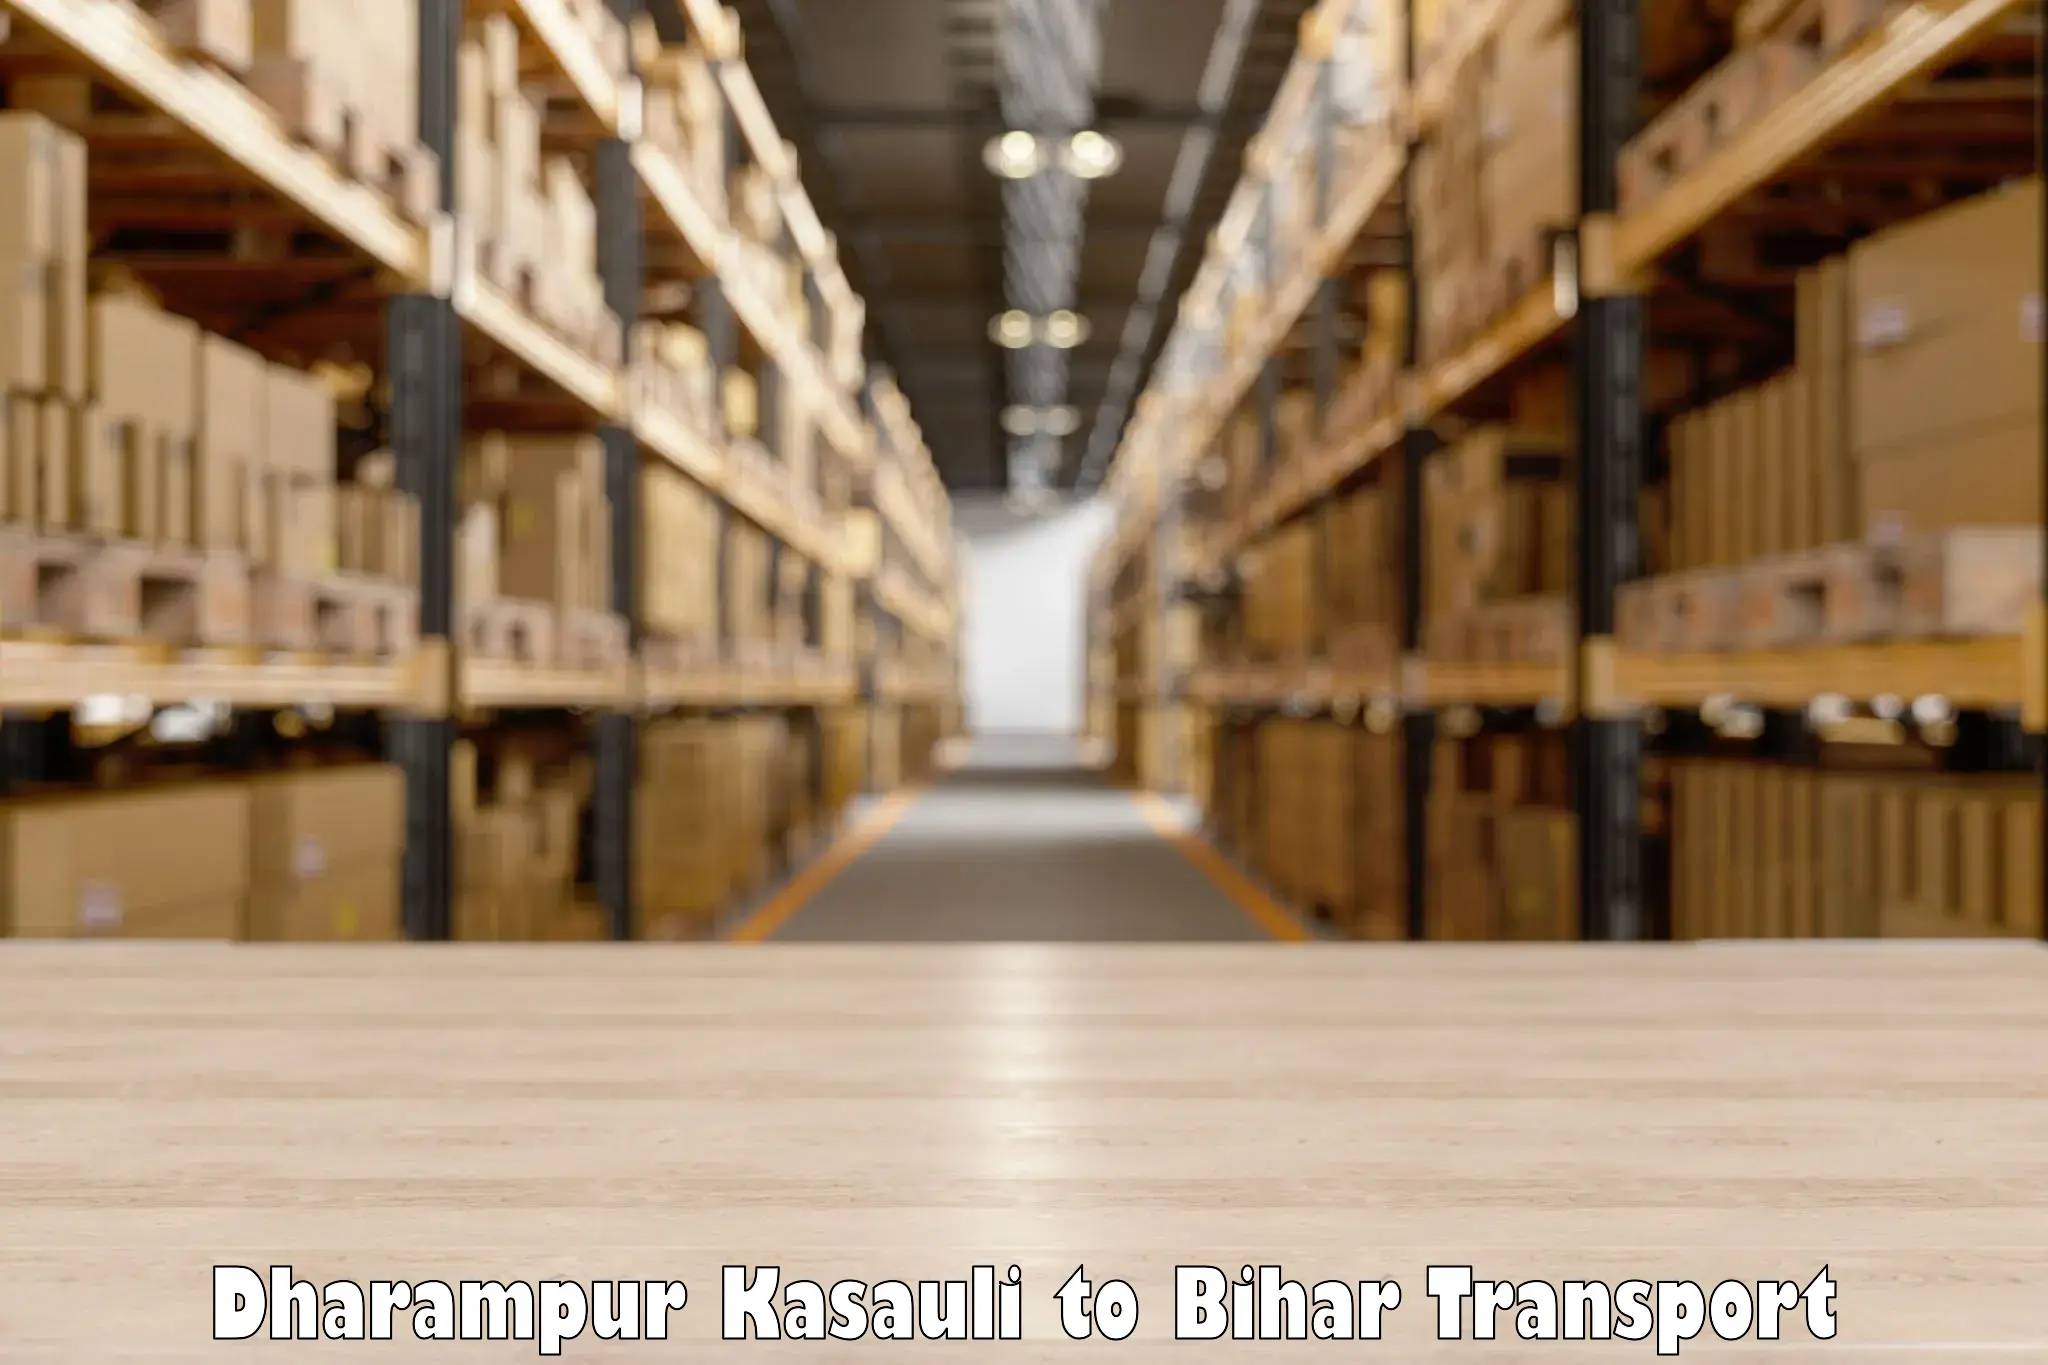 Furniture transport service Dharampur Kasauli to Sirdala